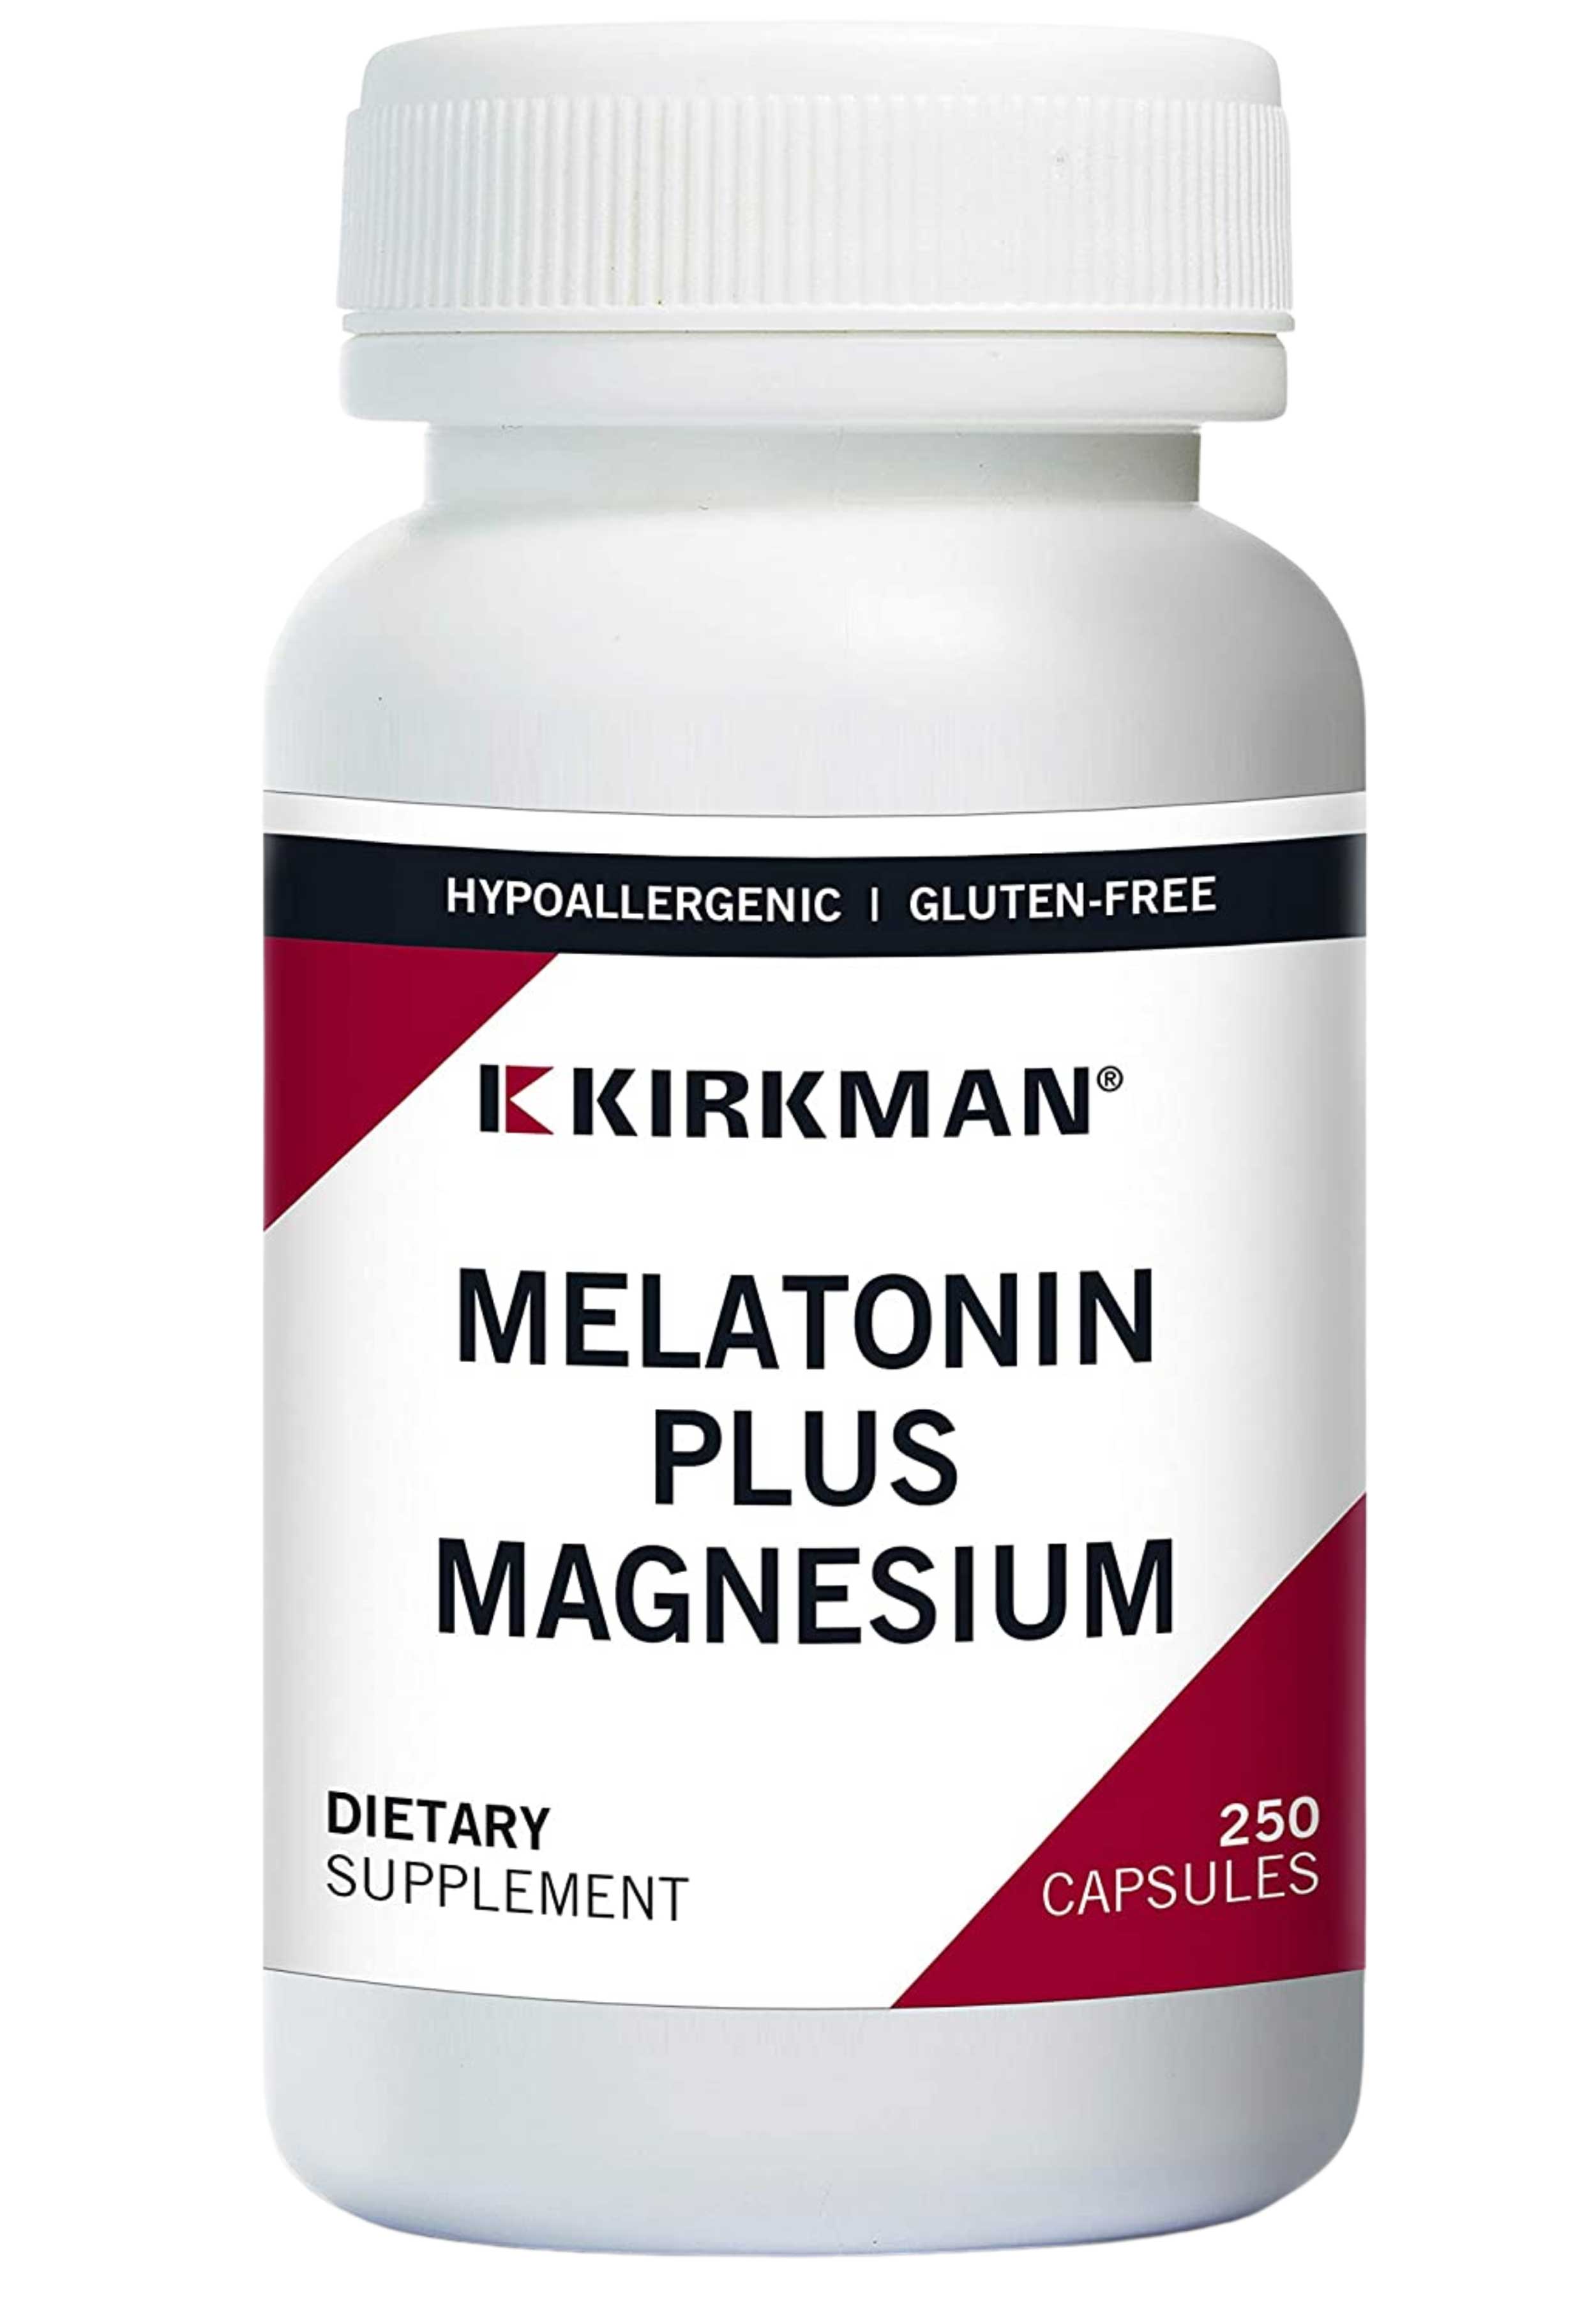 Kirkman Melatonin Plus Magnesium